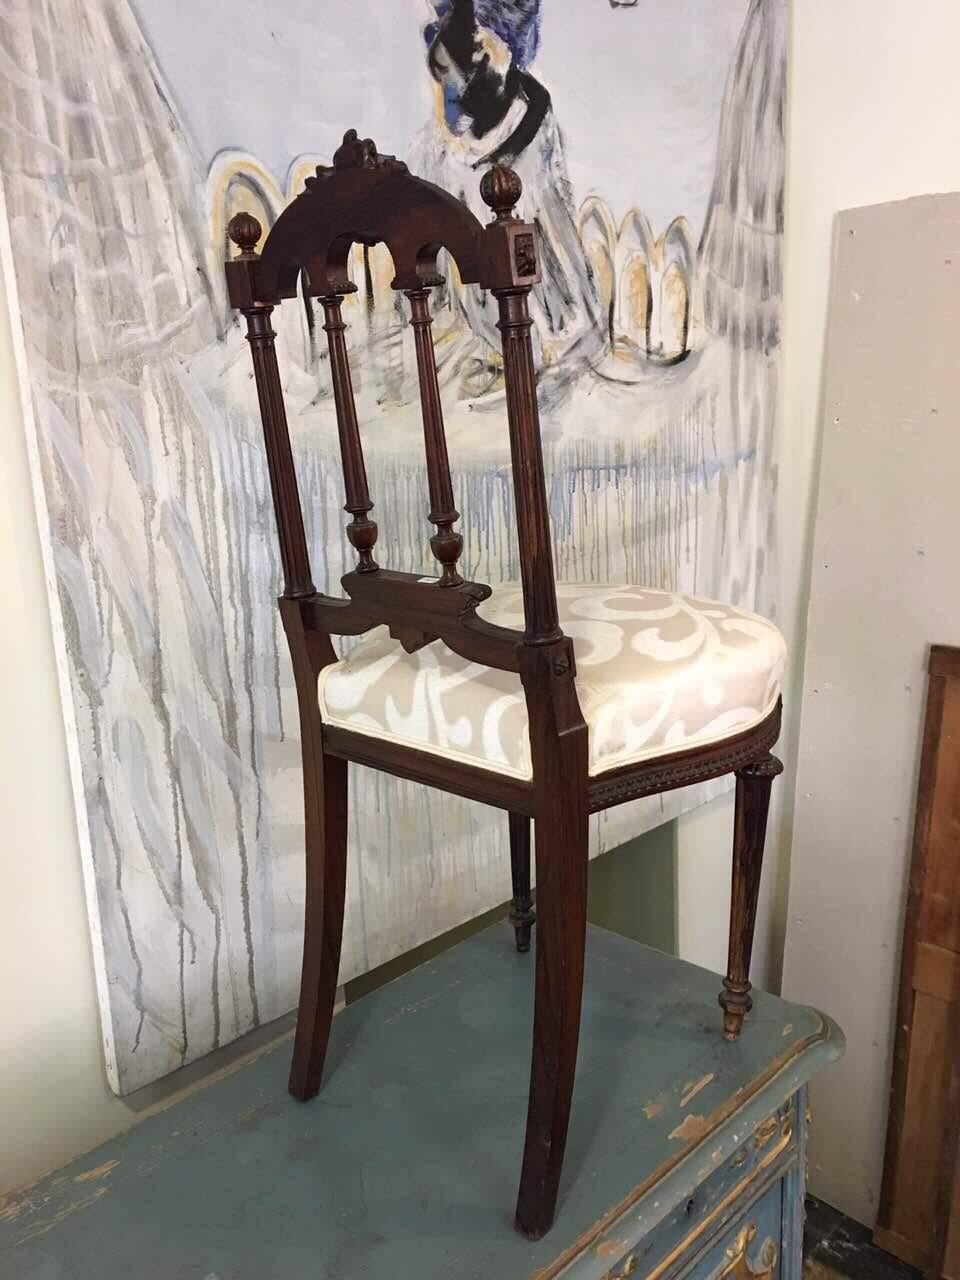 Paire de petites chaises d'appoint françaises du 19e siècle en noyer magnifiquement sculpté, de style victorien.
Très stable et confortable avec une nouvelle sellerie blanche,
vers 1870.